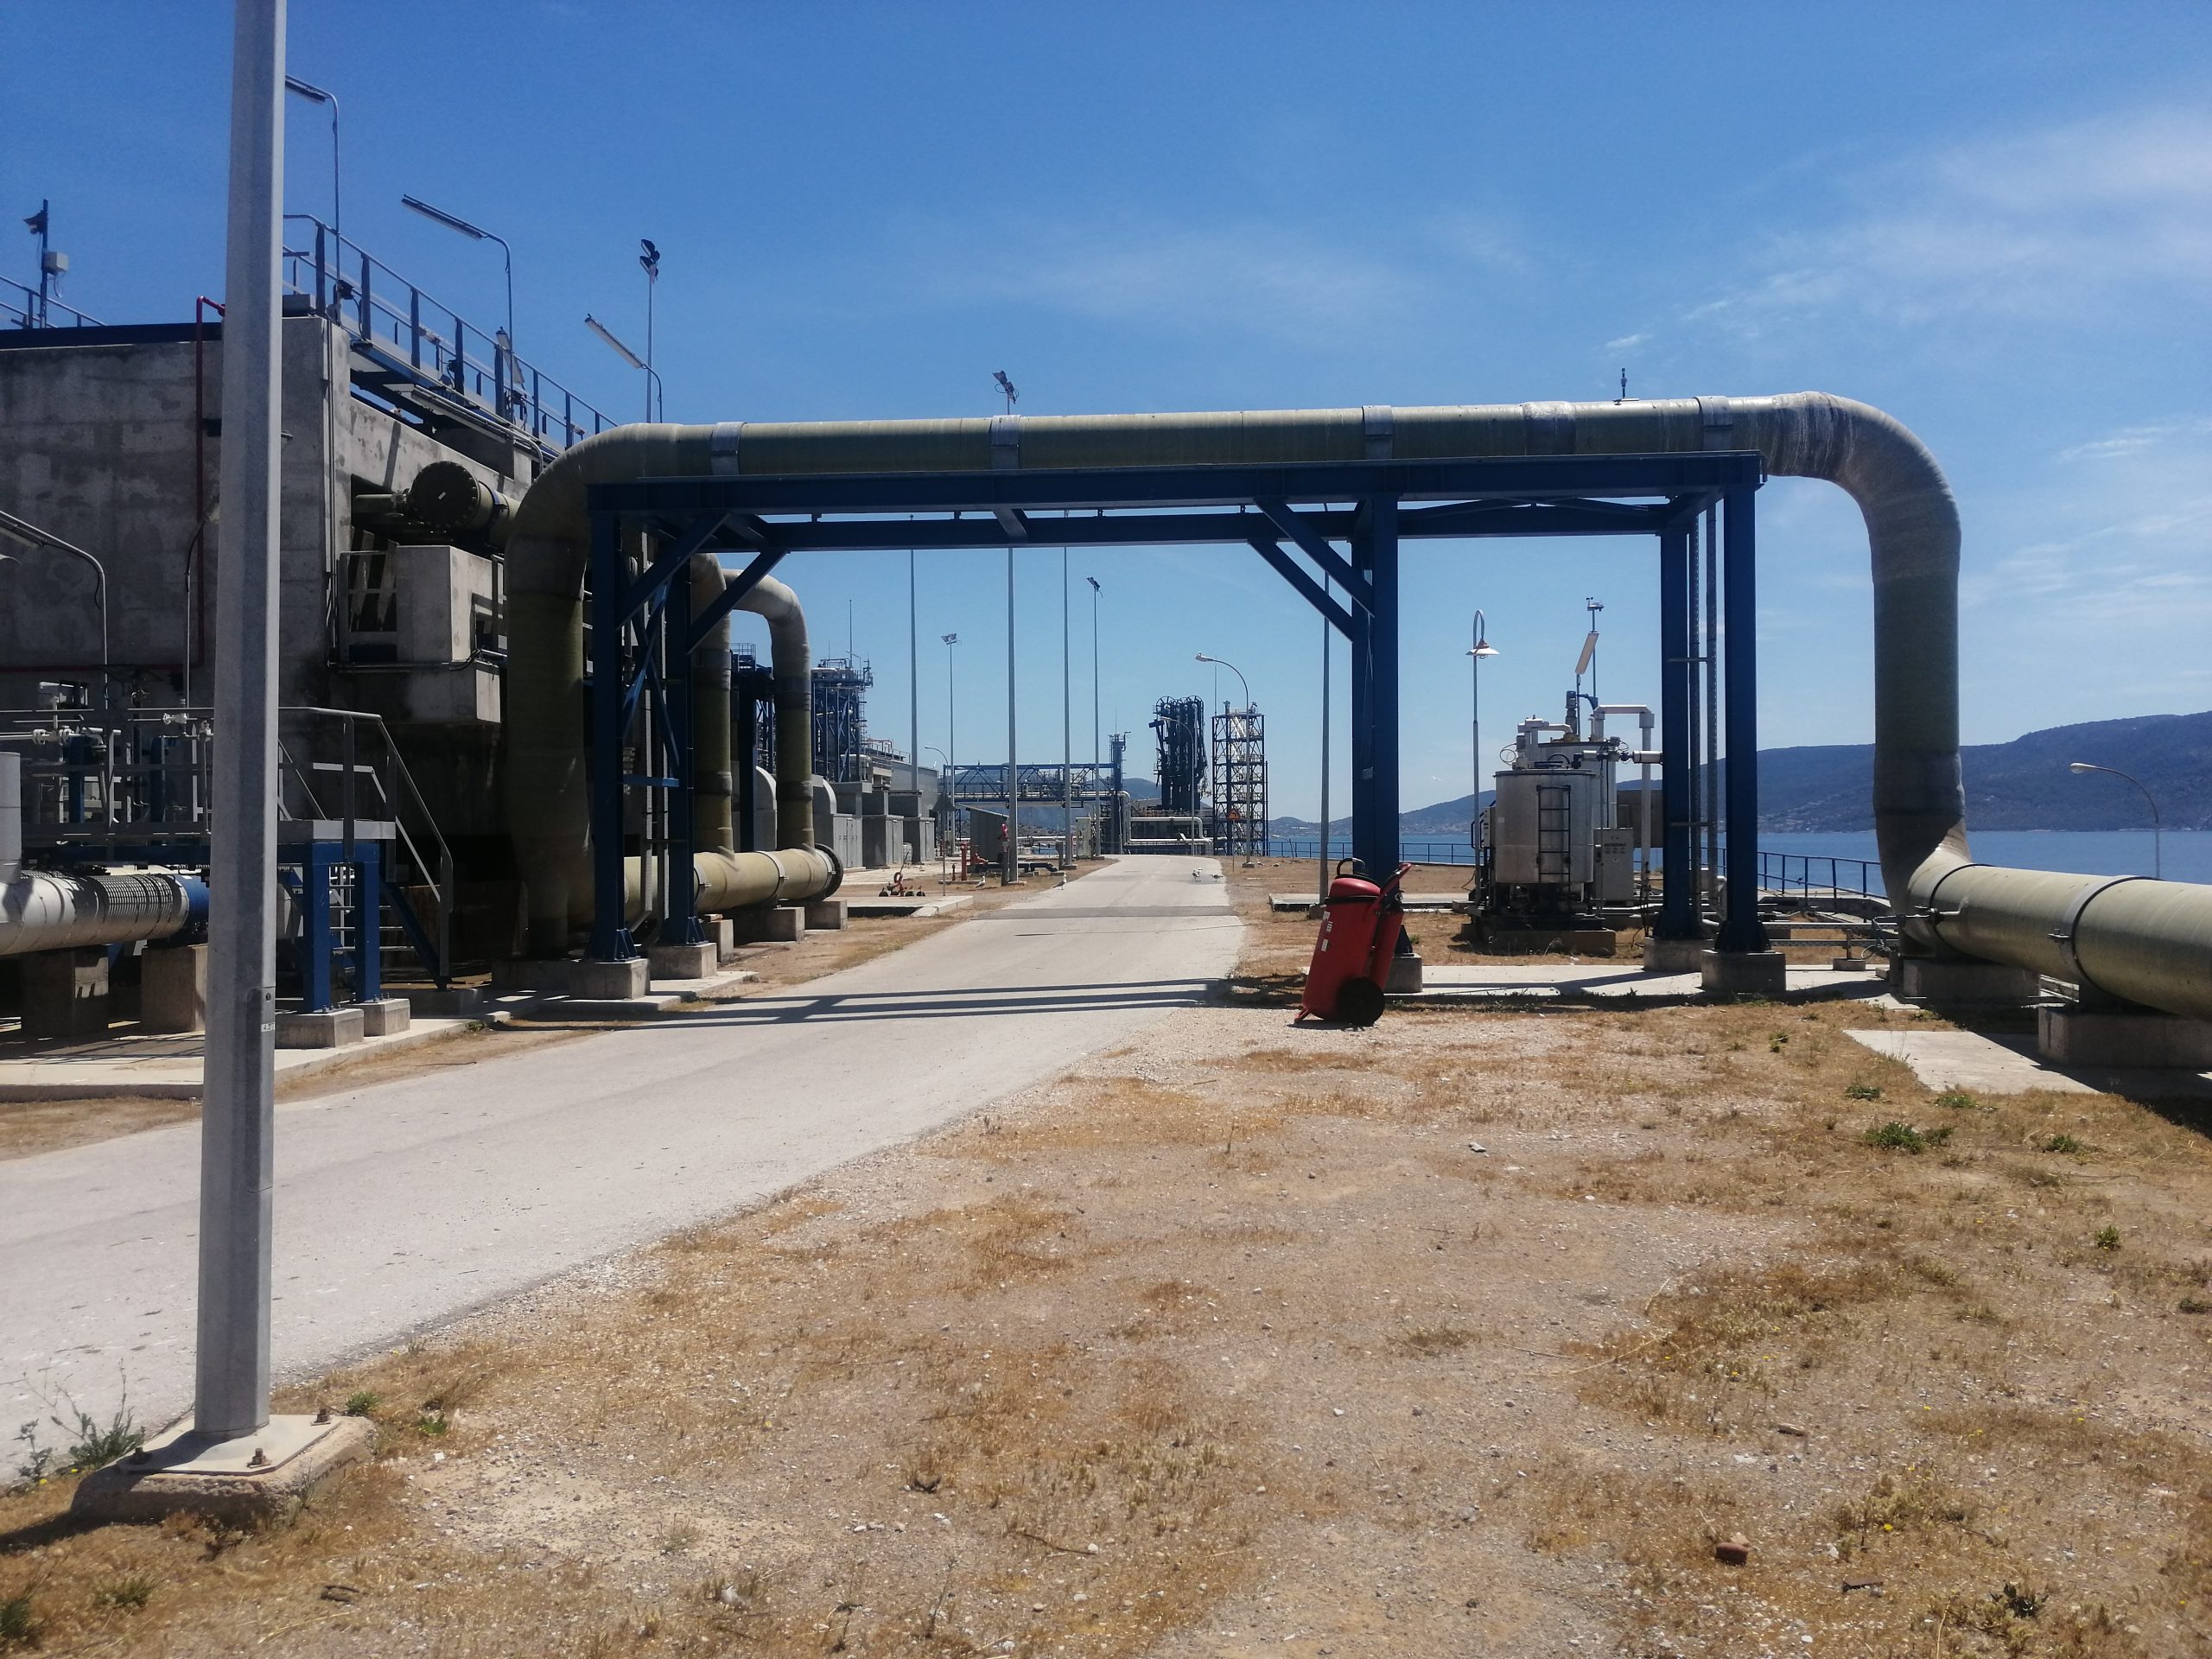 Fornitura tubazioni PRFV per presa acqua mare – 2nd Upgrade Project of Revithoussa LNG Terminal – 2017